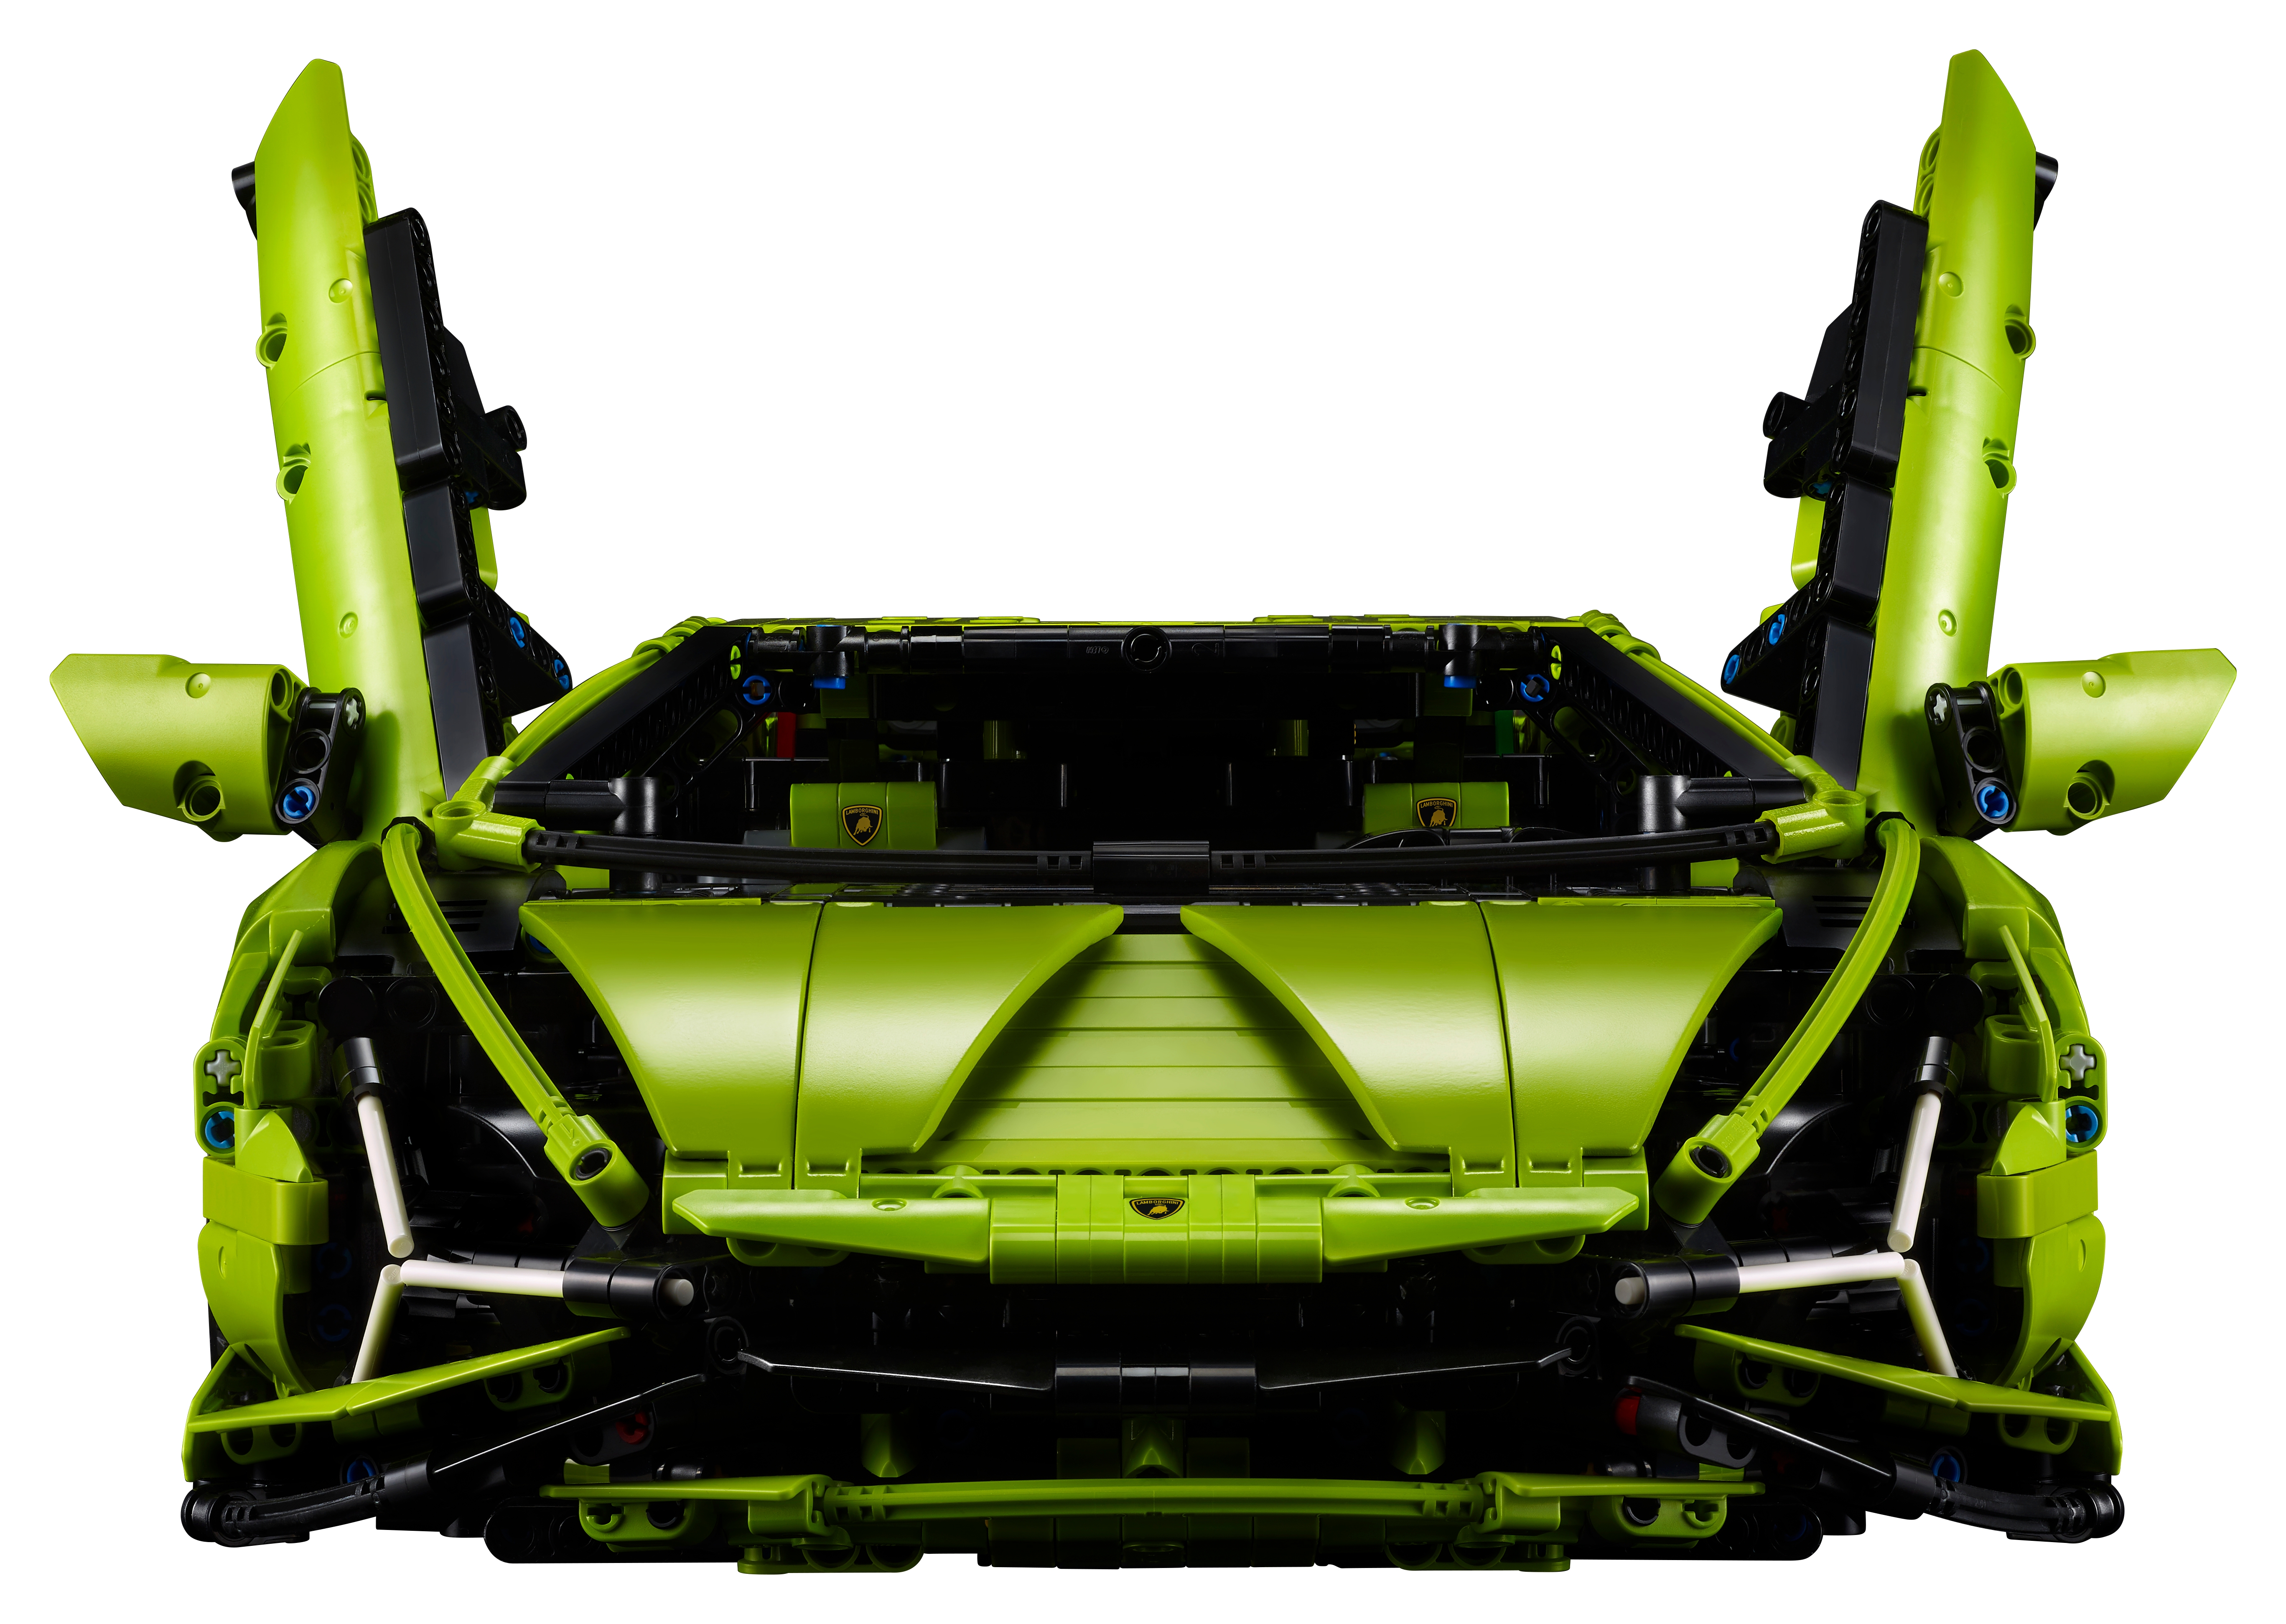 LEGO Technic 42115 Lamborghini Sián FKP 37, Set con Auto Sportiva,  Modellino di Macchina da Costruire per Adulti, Idea Regalo - LEGO - Technic  - Automobili - Giocattoli